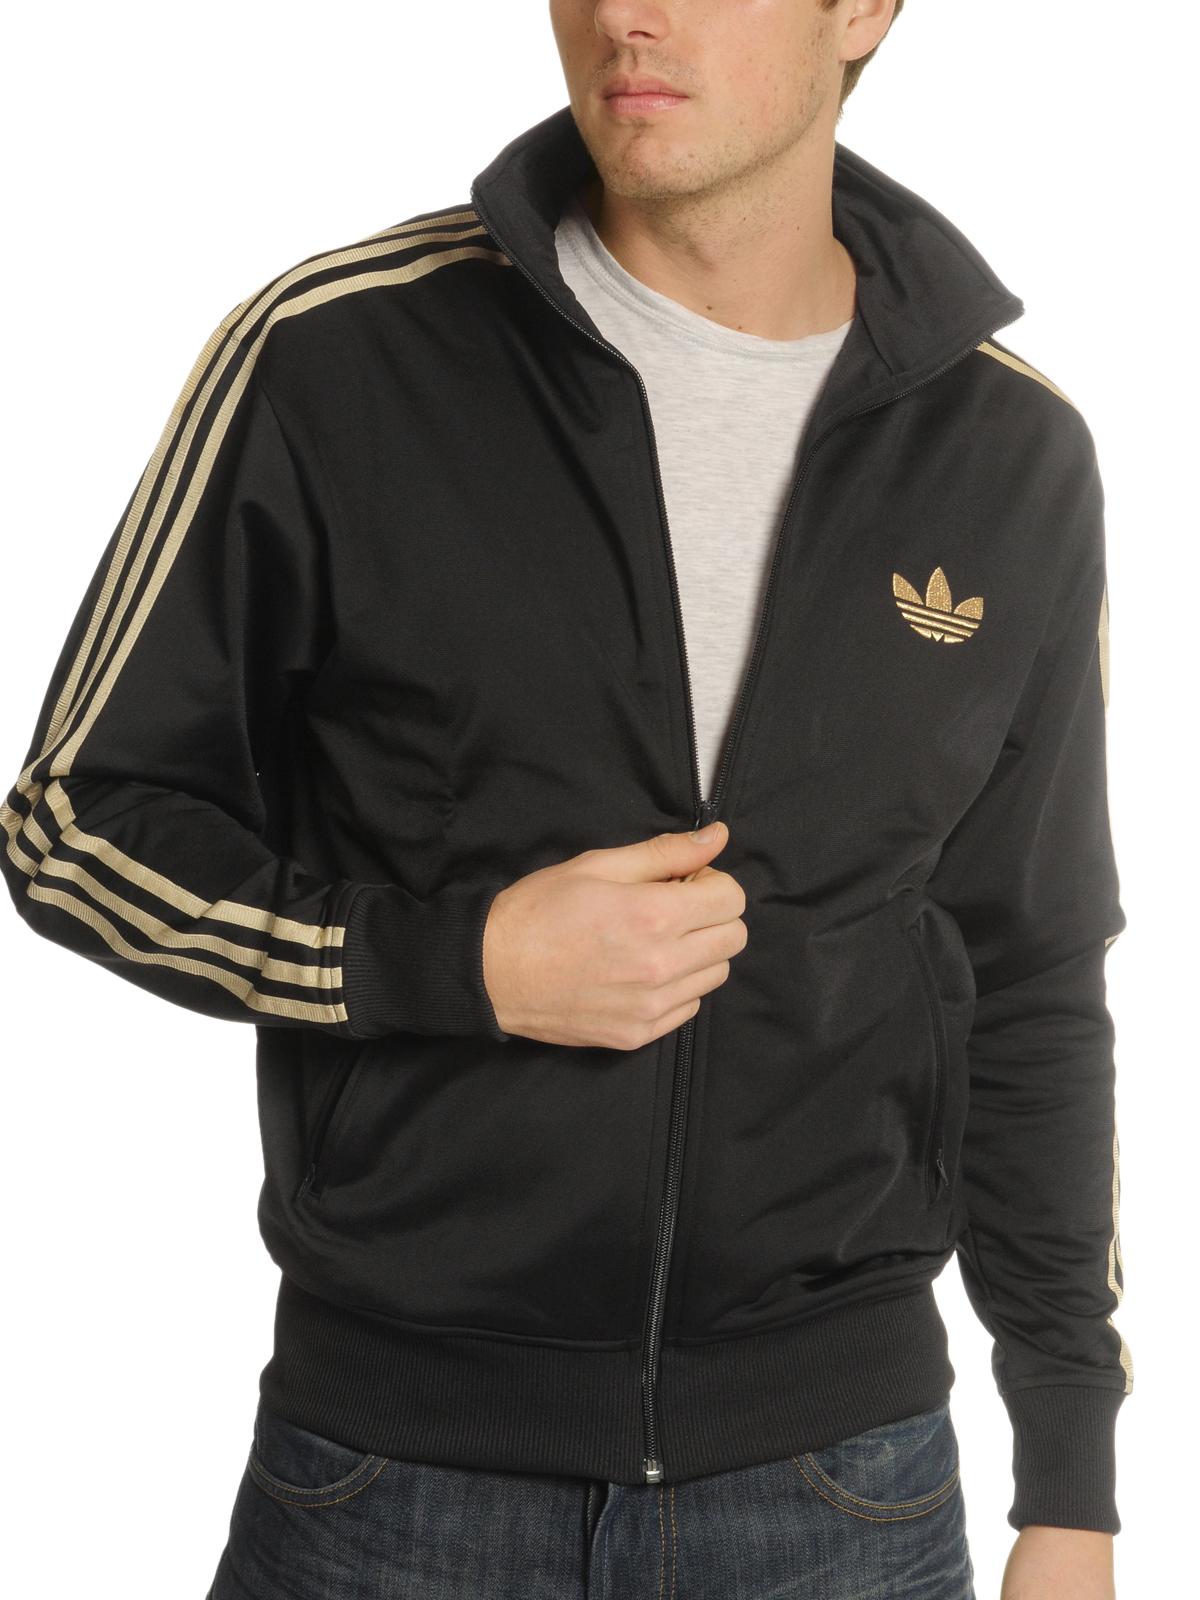 Foto Adidas Adi FB chaqueta de entrenamiento negro/oro metálico XL foto 116729